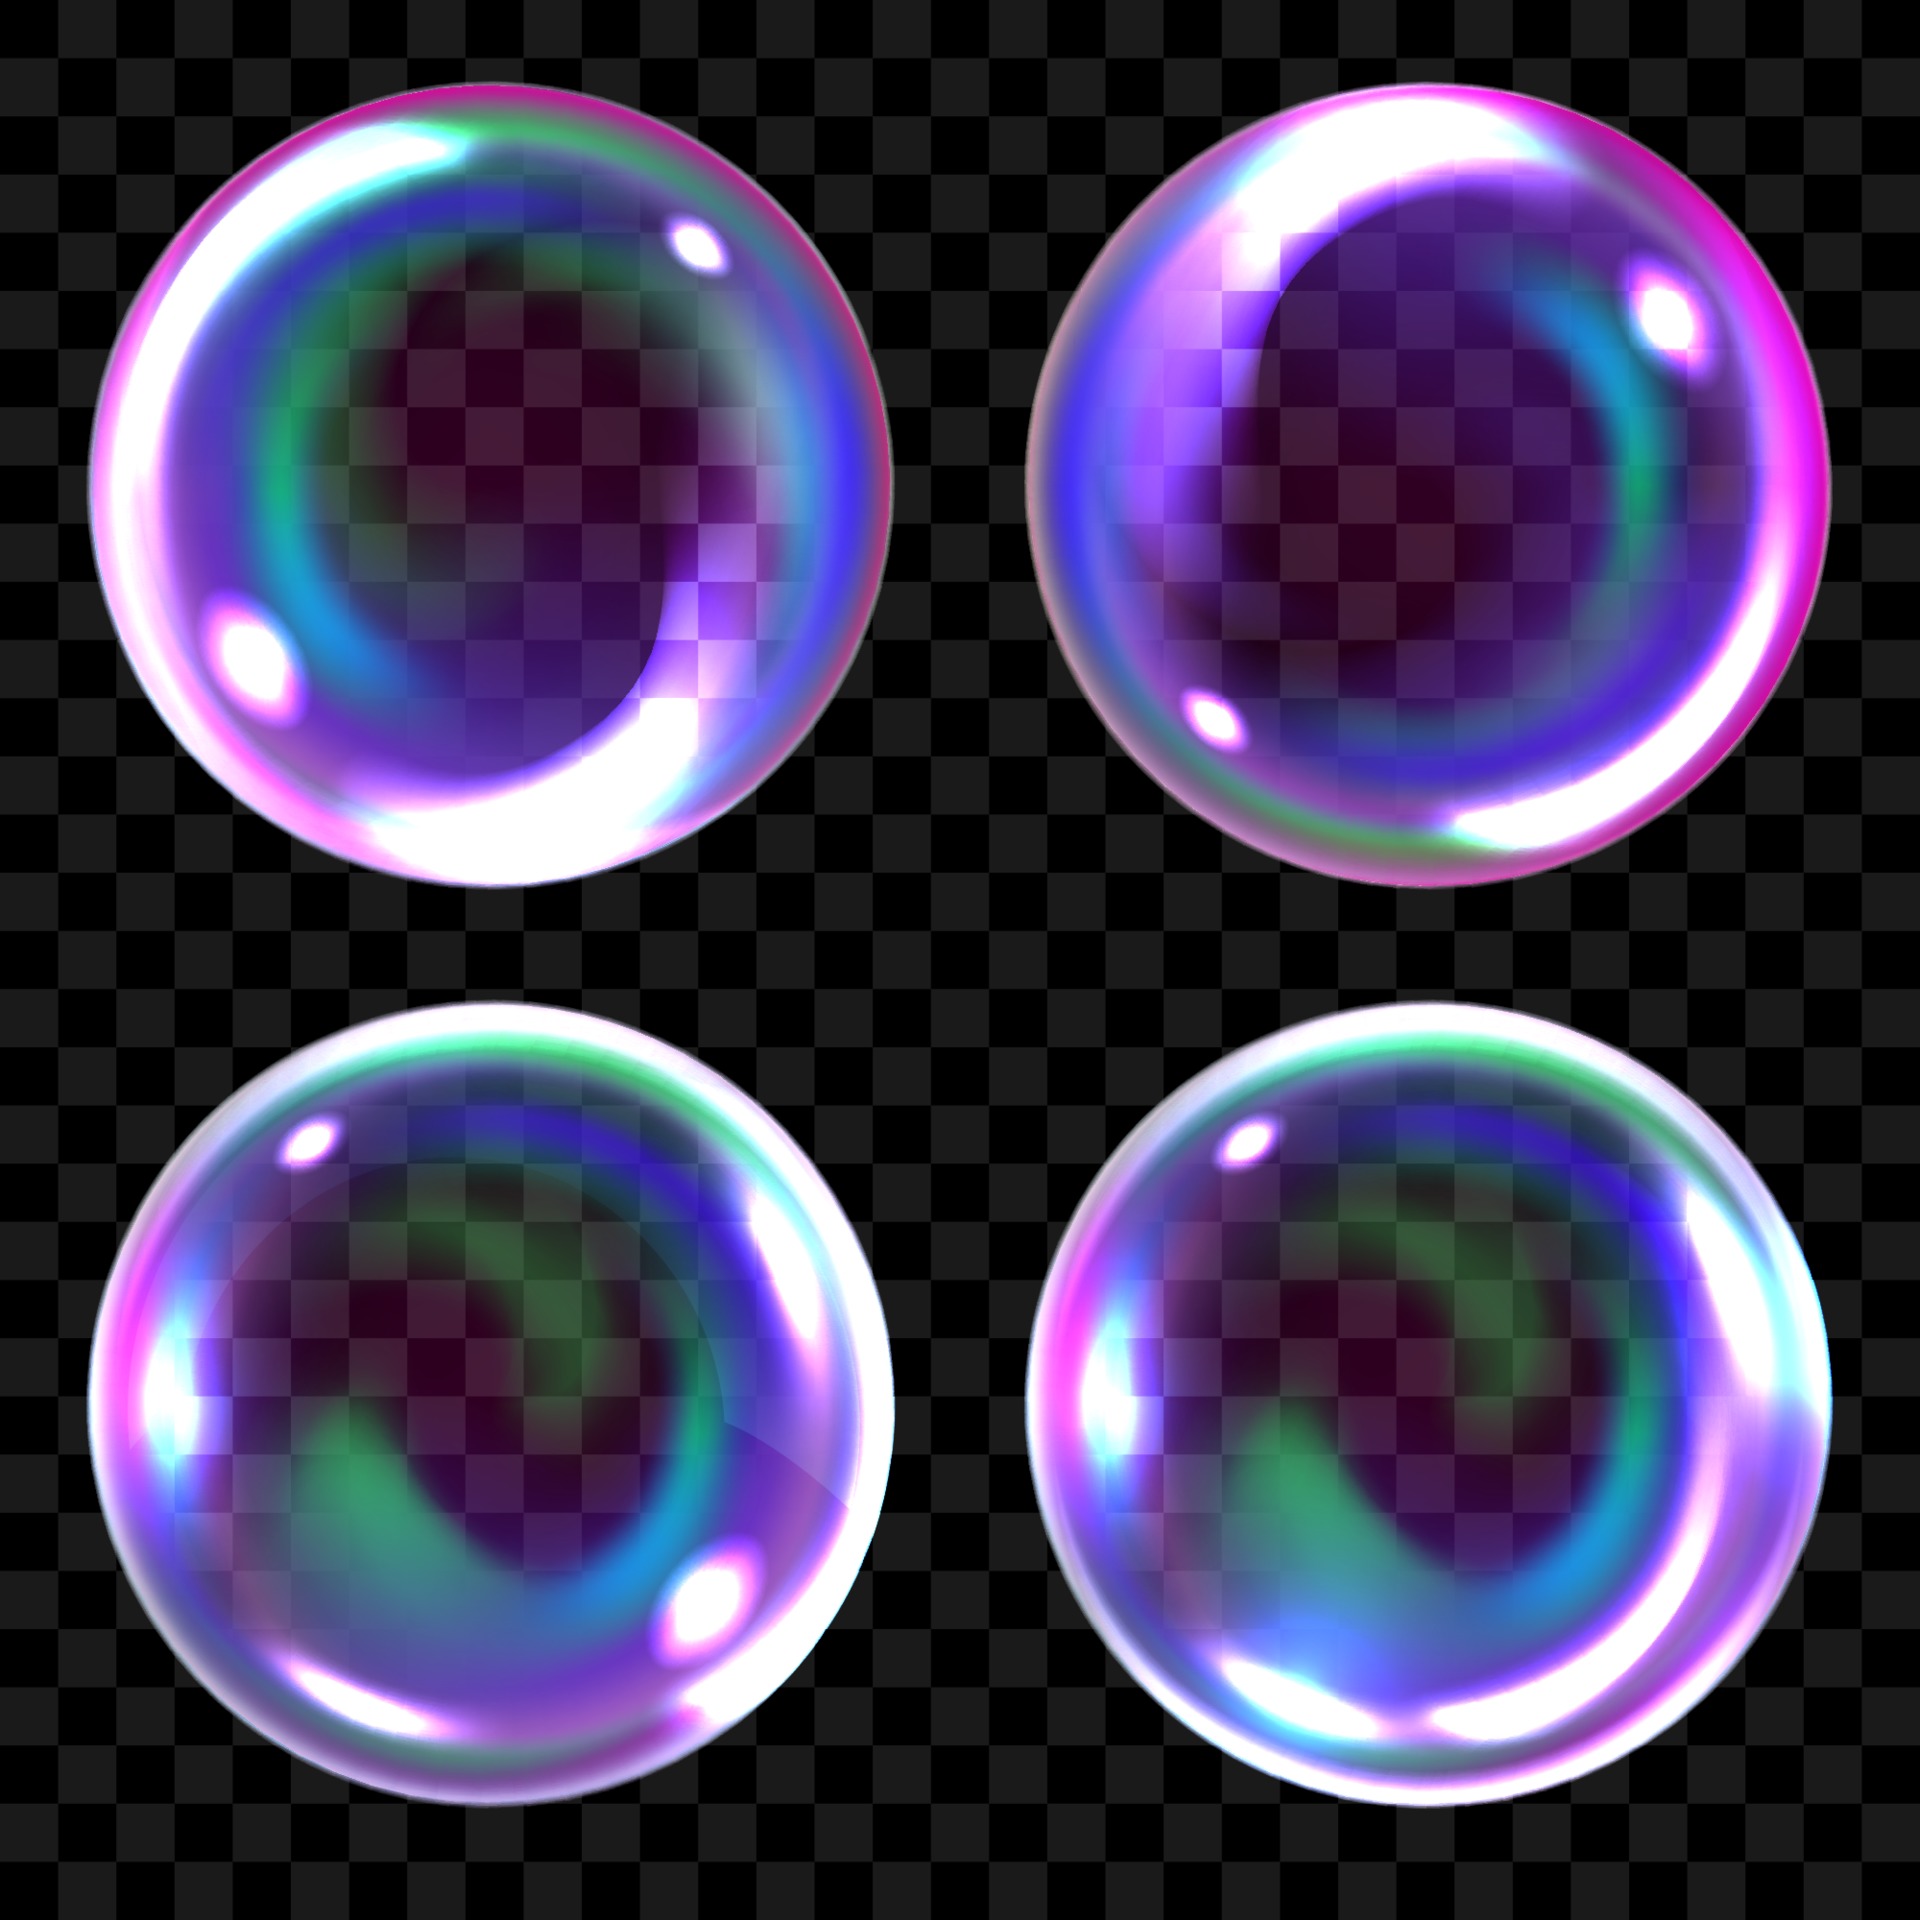 bolle di sapone, sfere d'aria trasparenti realistiche di colori arcobaleno  con riflessi e luci impostate 2058894 Arte vettoriale a Vecteezy